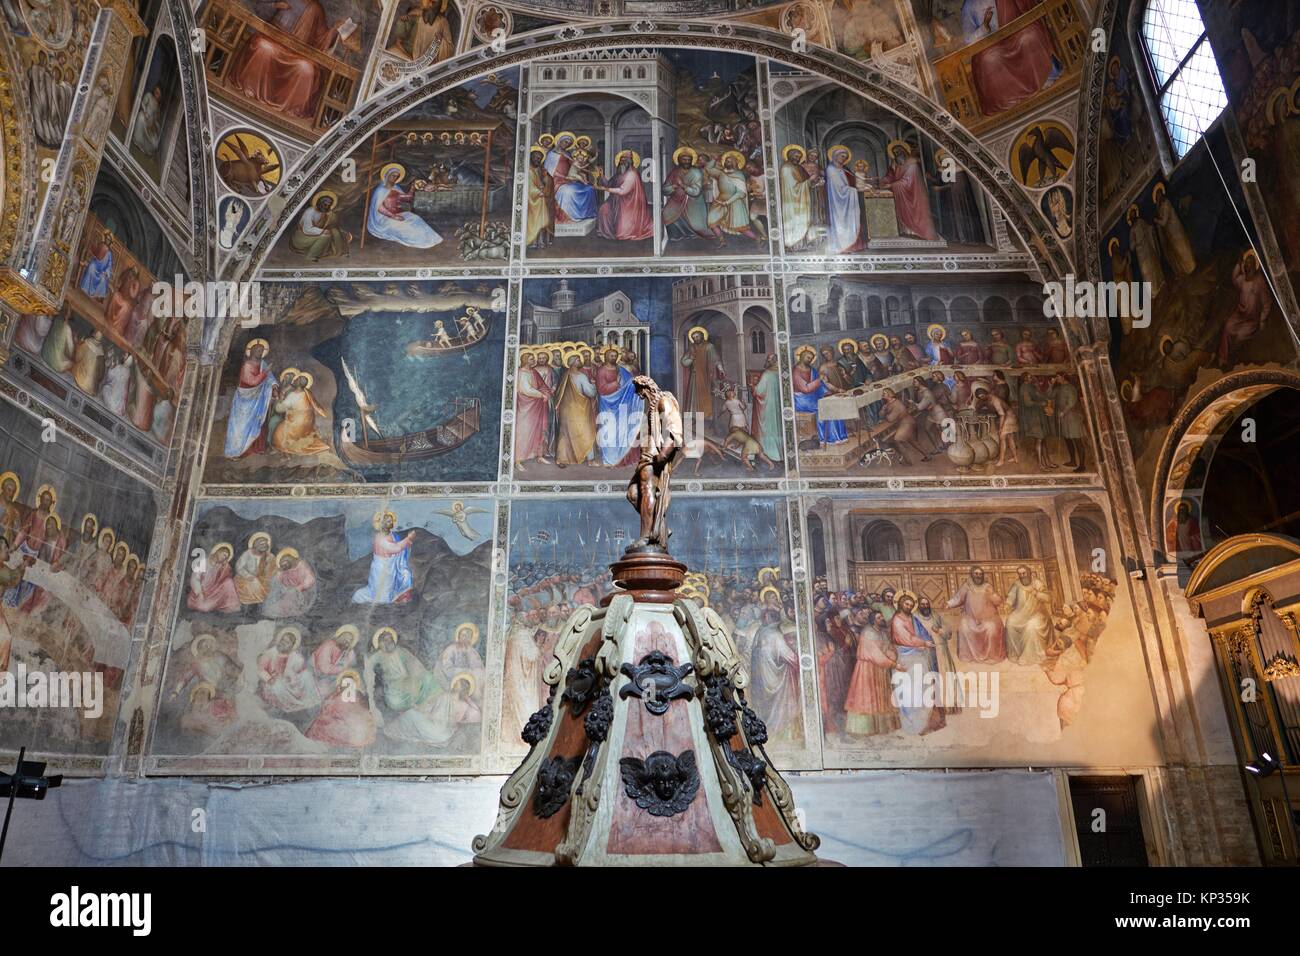 Les intérieurs de l'Padoue, Vénétie, Italie Baptistère le baptistère de Padoue, dédiée à Saint Jean le Baptiste, est un édifice religieux trouvés sur le Banque D'Images